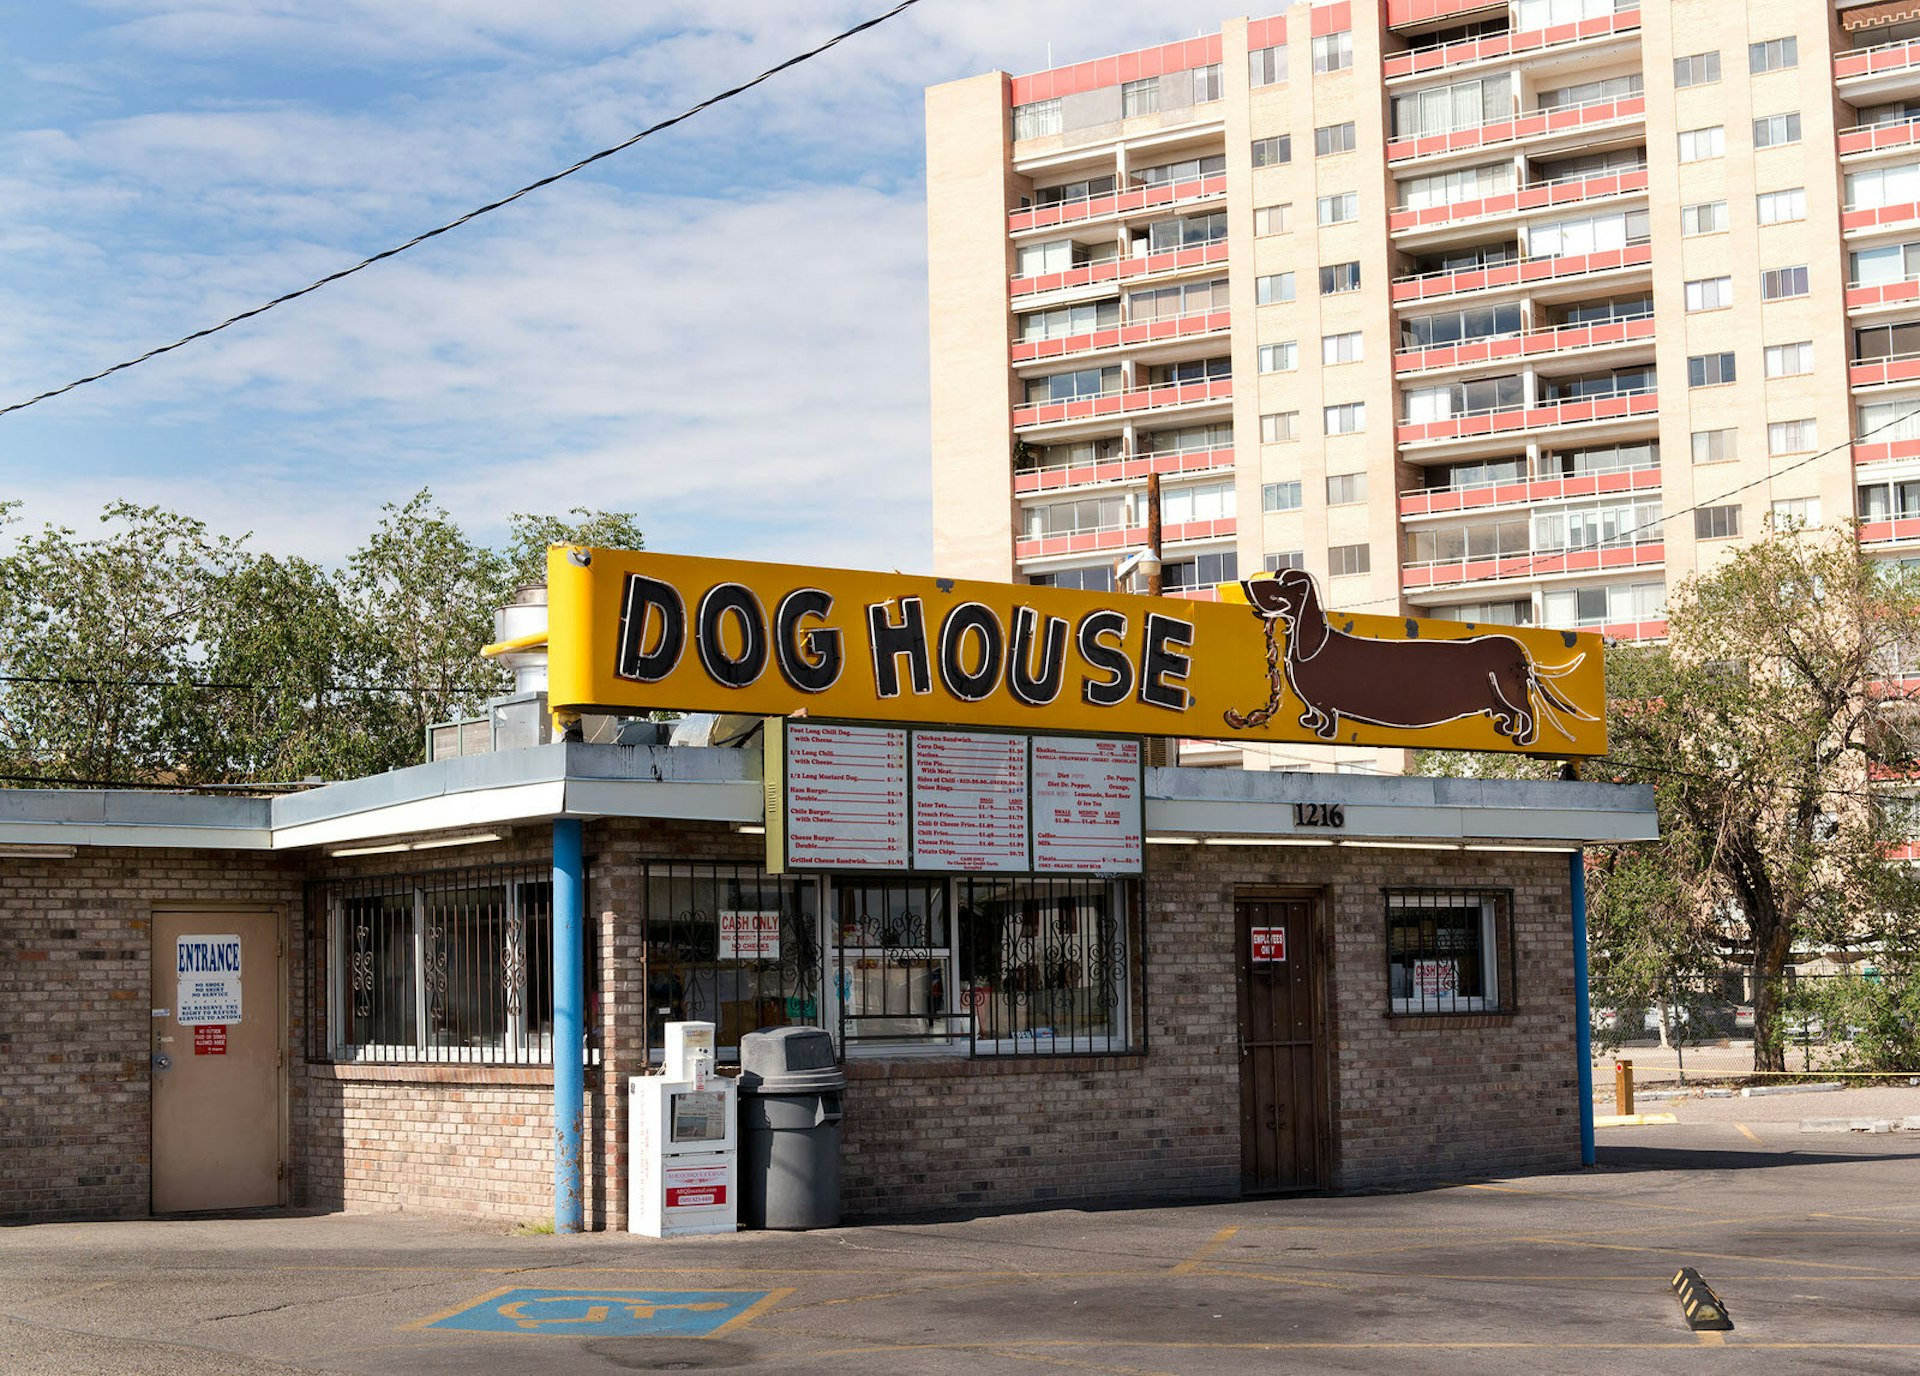 En vy av restaurangen The Dog House och dess skylt som visar en 